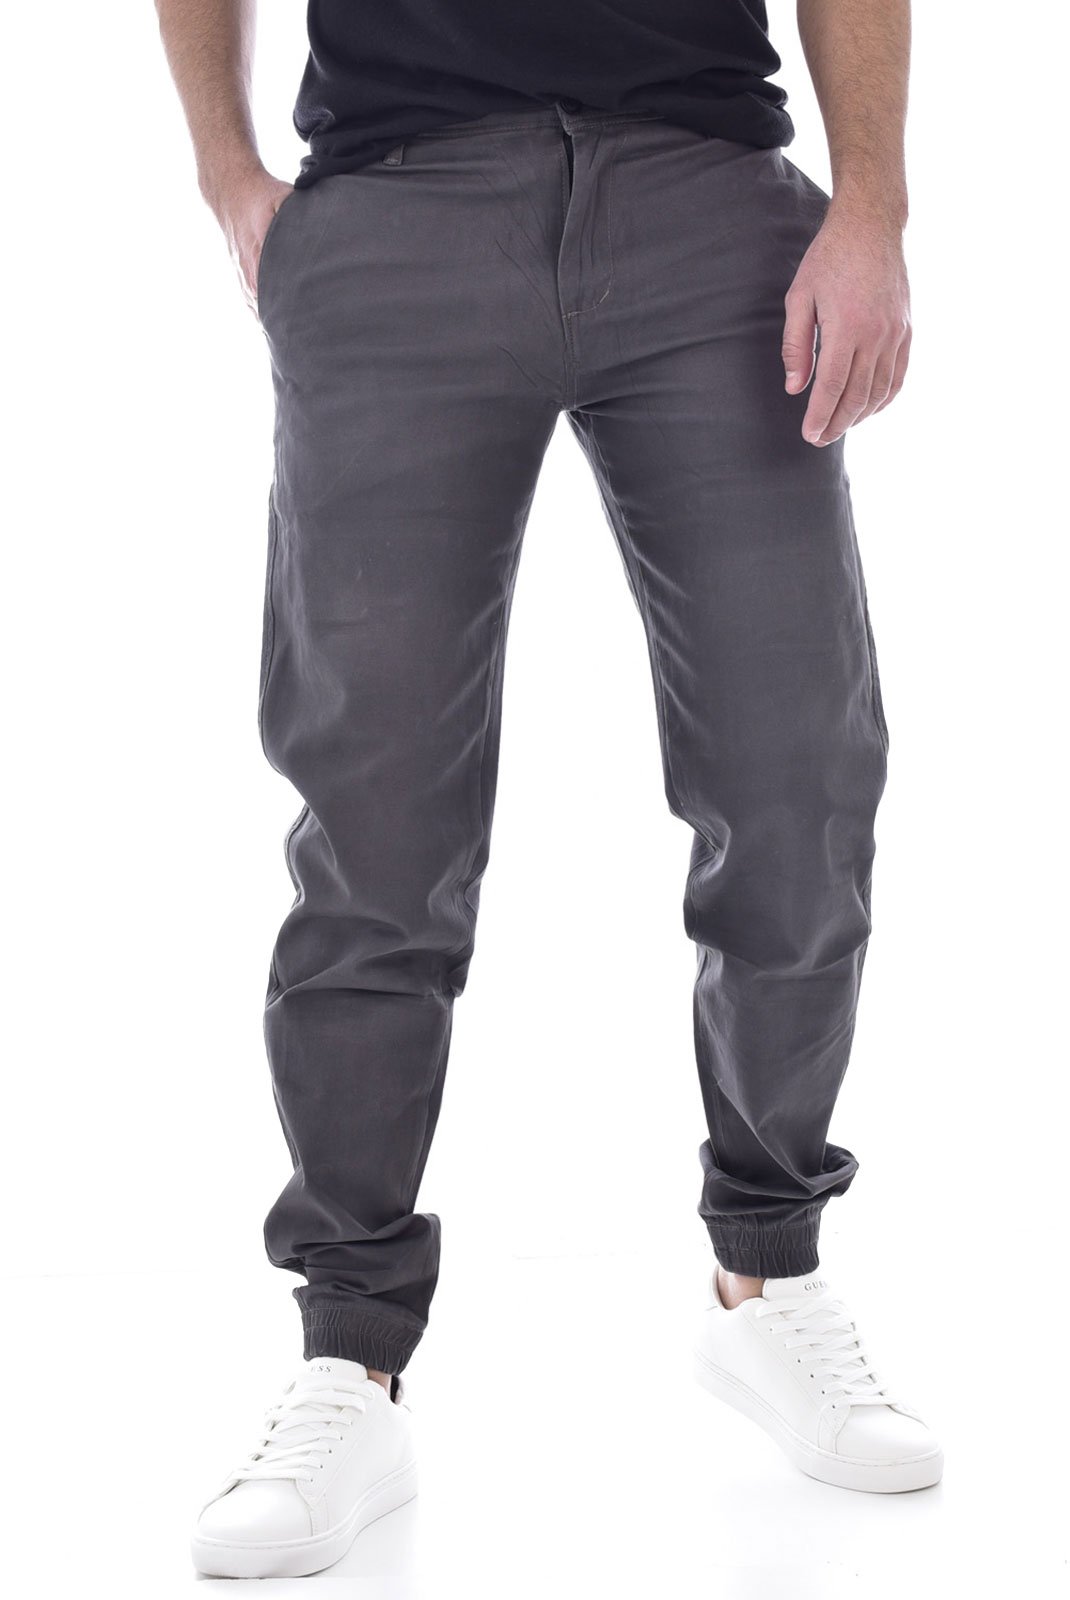 Pantalons sport/streetwear  Giani 5 D191 GRIS